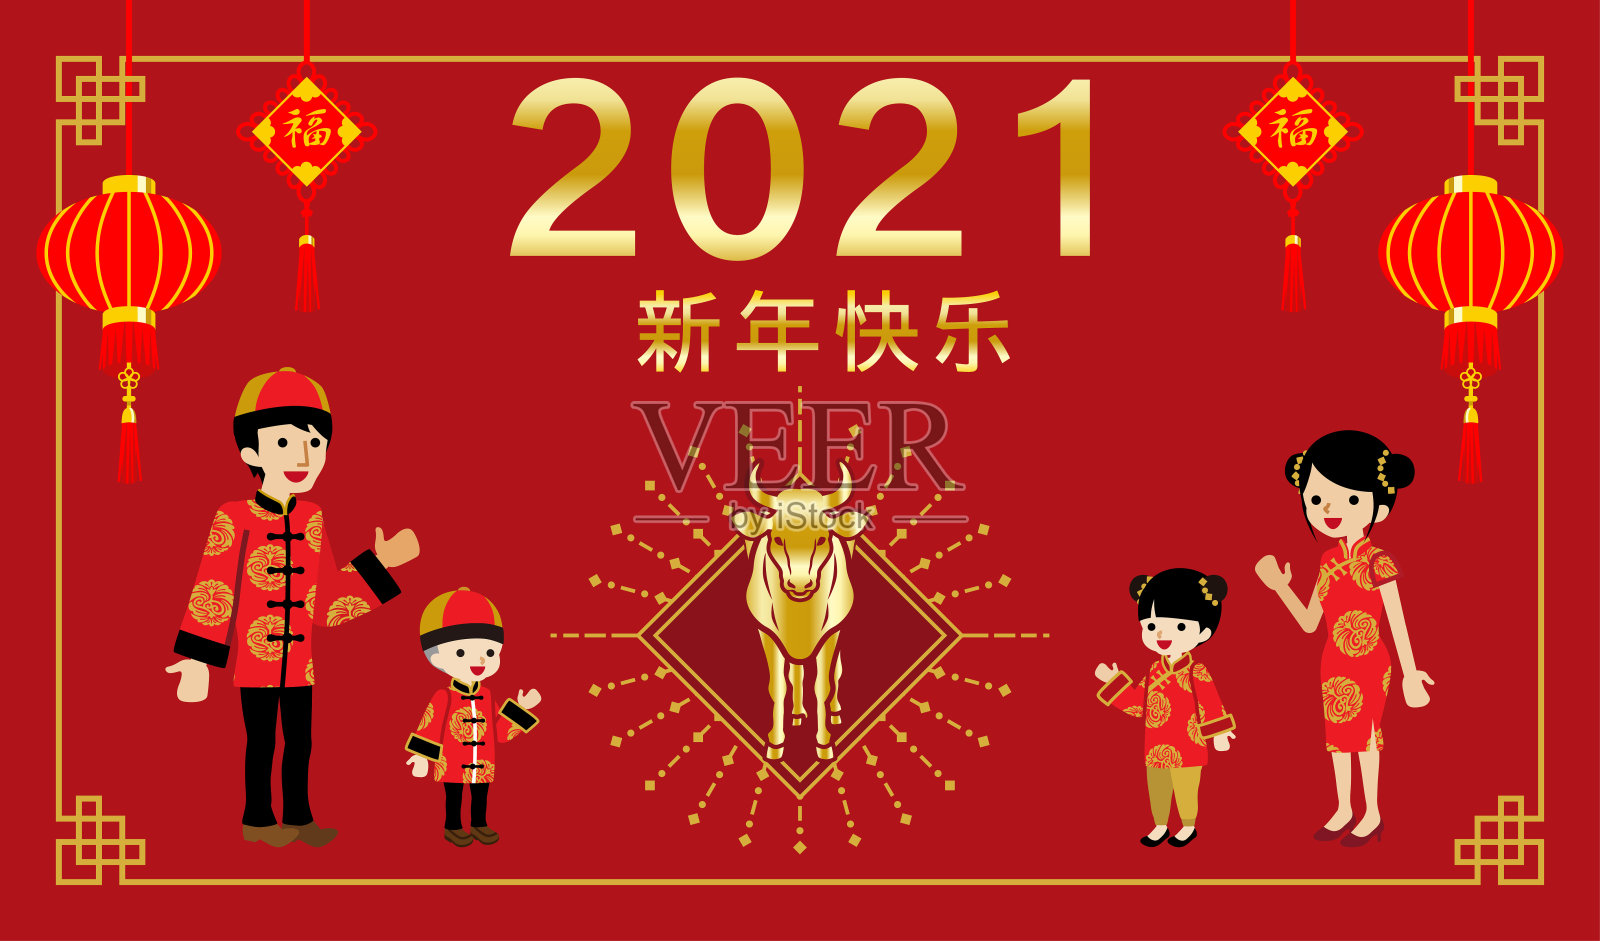 2021年中国家庭庆祝新年-牛年，中文单词意味着“新年快乐”(中)和“祝福”(在装饰品中)插画图片素材